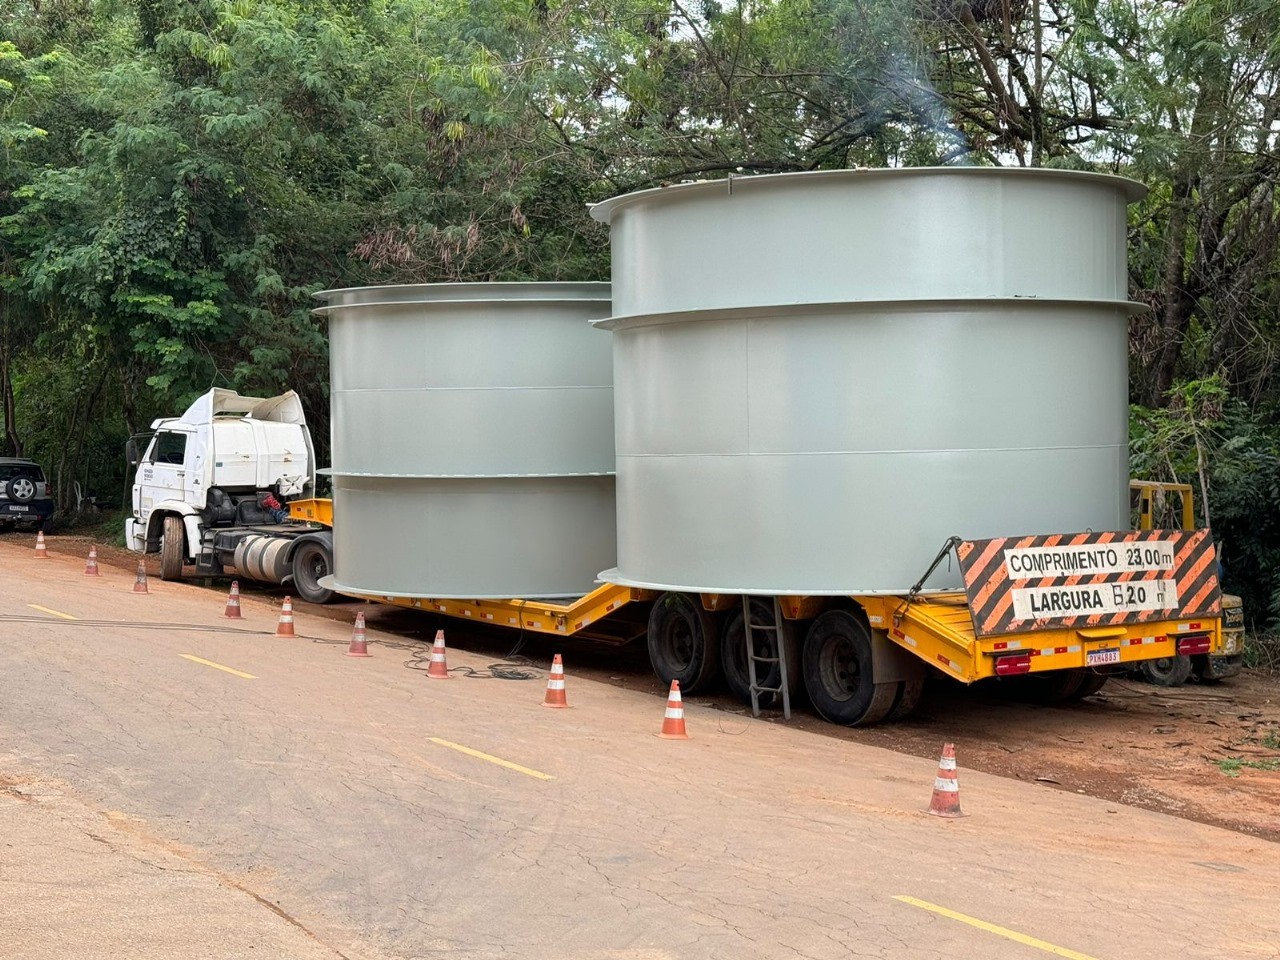 Transporte de peça com 18 toneladas deixará trânsito lento em Ipatinga